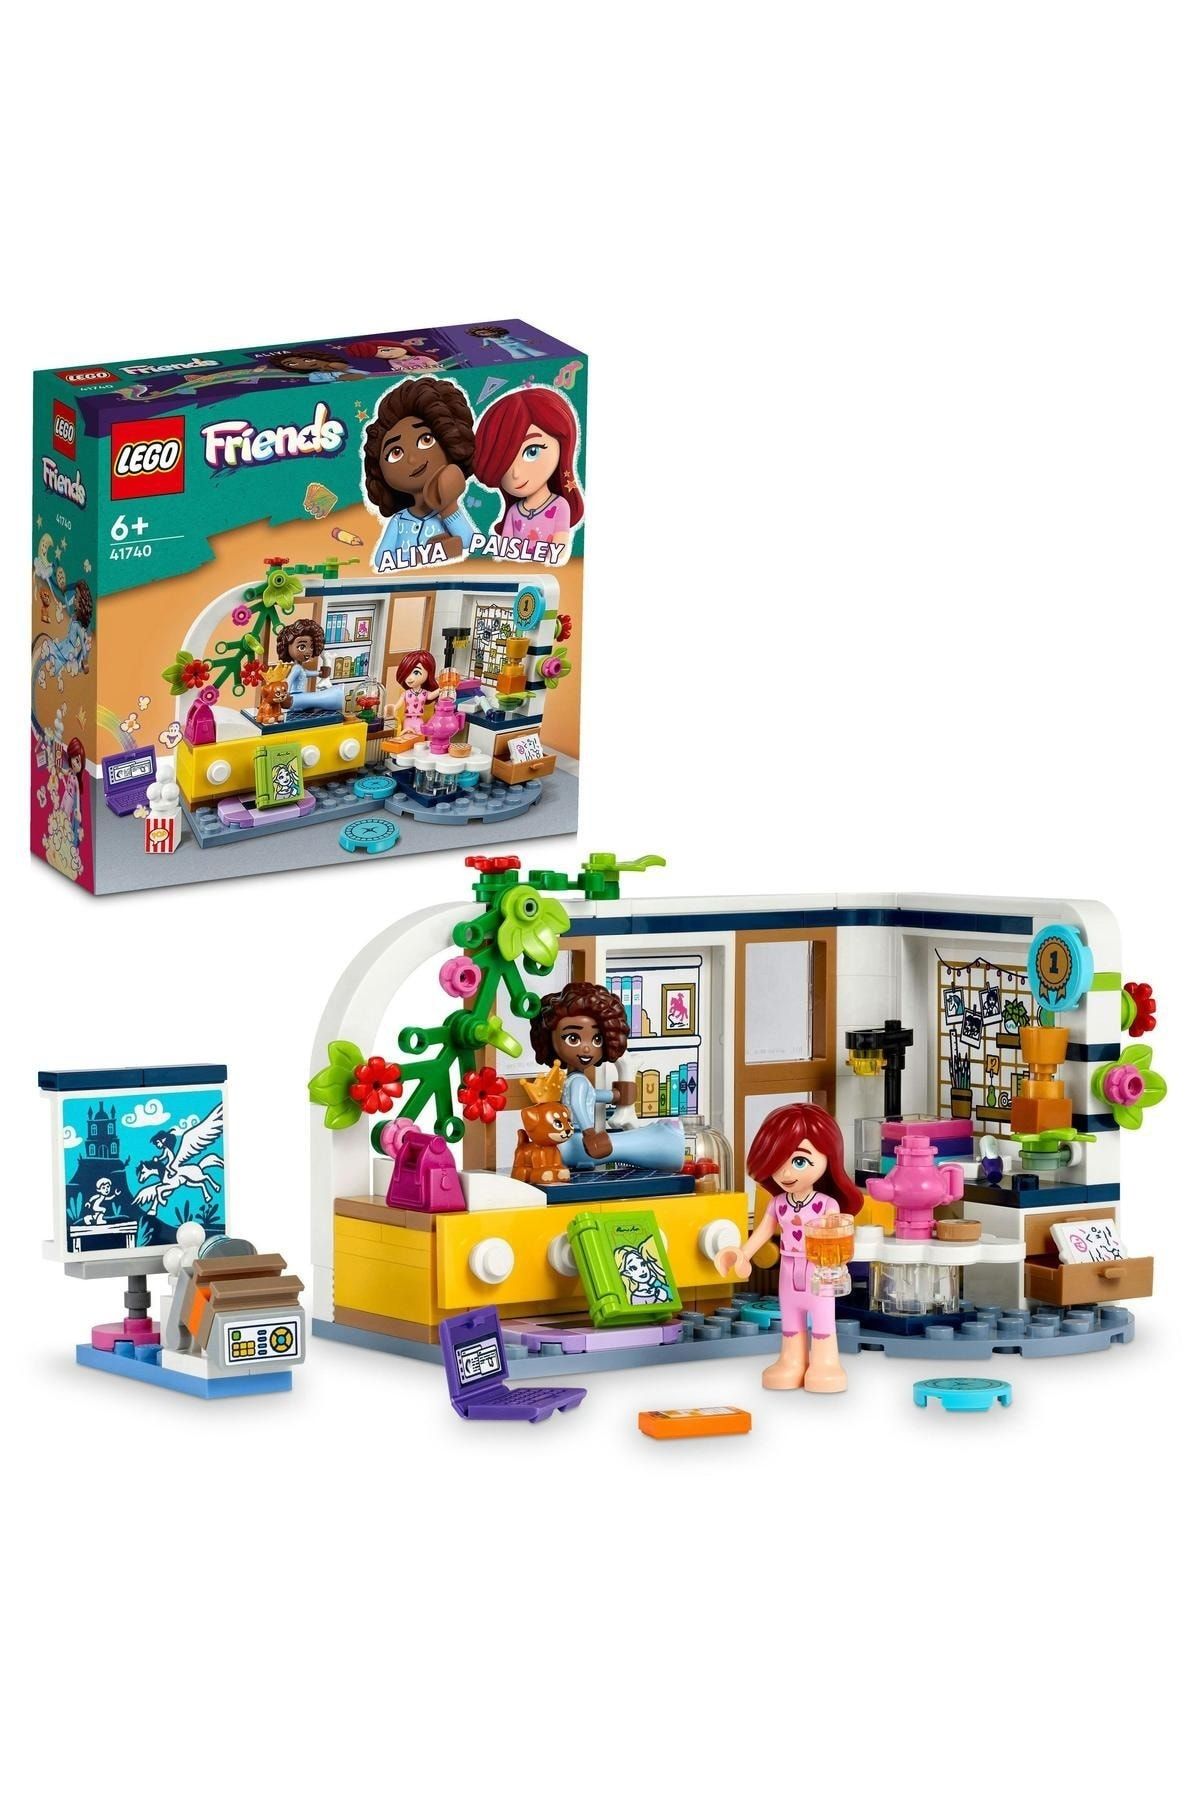 LEGO ® Friends Aliya'nın Odası 41740 - 6 Yaş ve Üzeri Çocuklar İçin Oyuncak Yapım Seti (209 Parça)